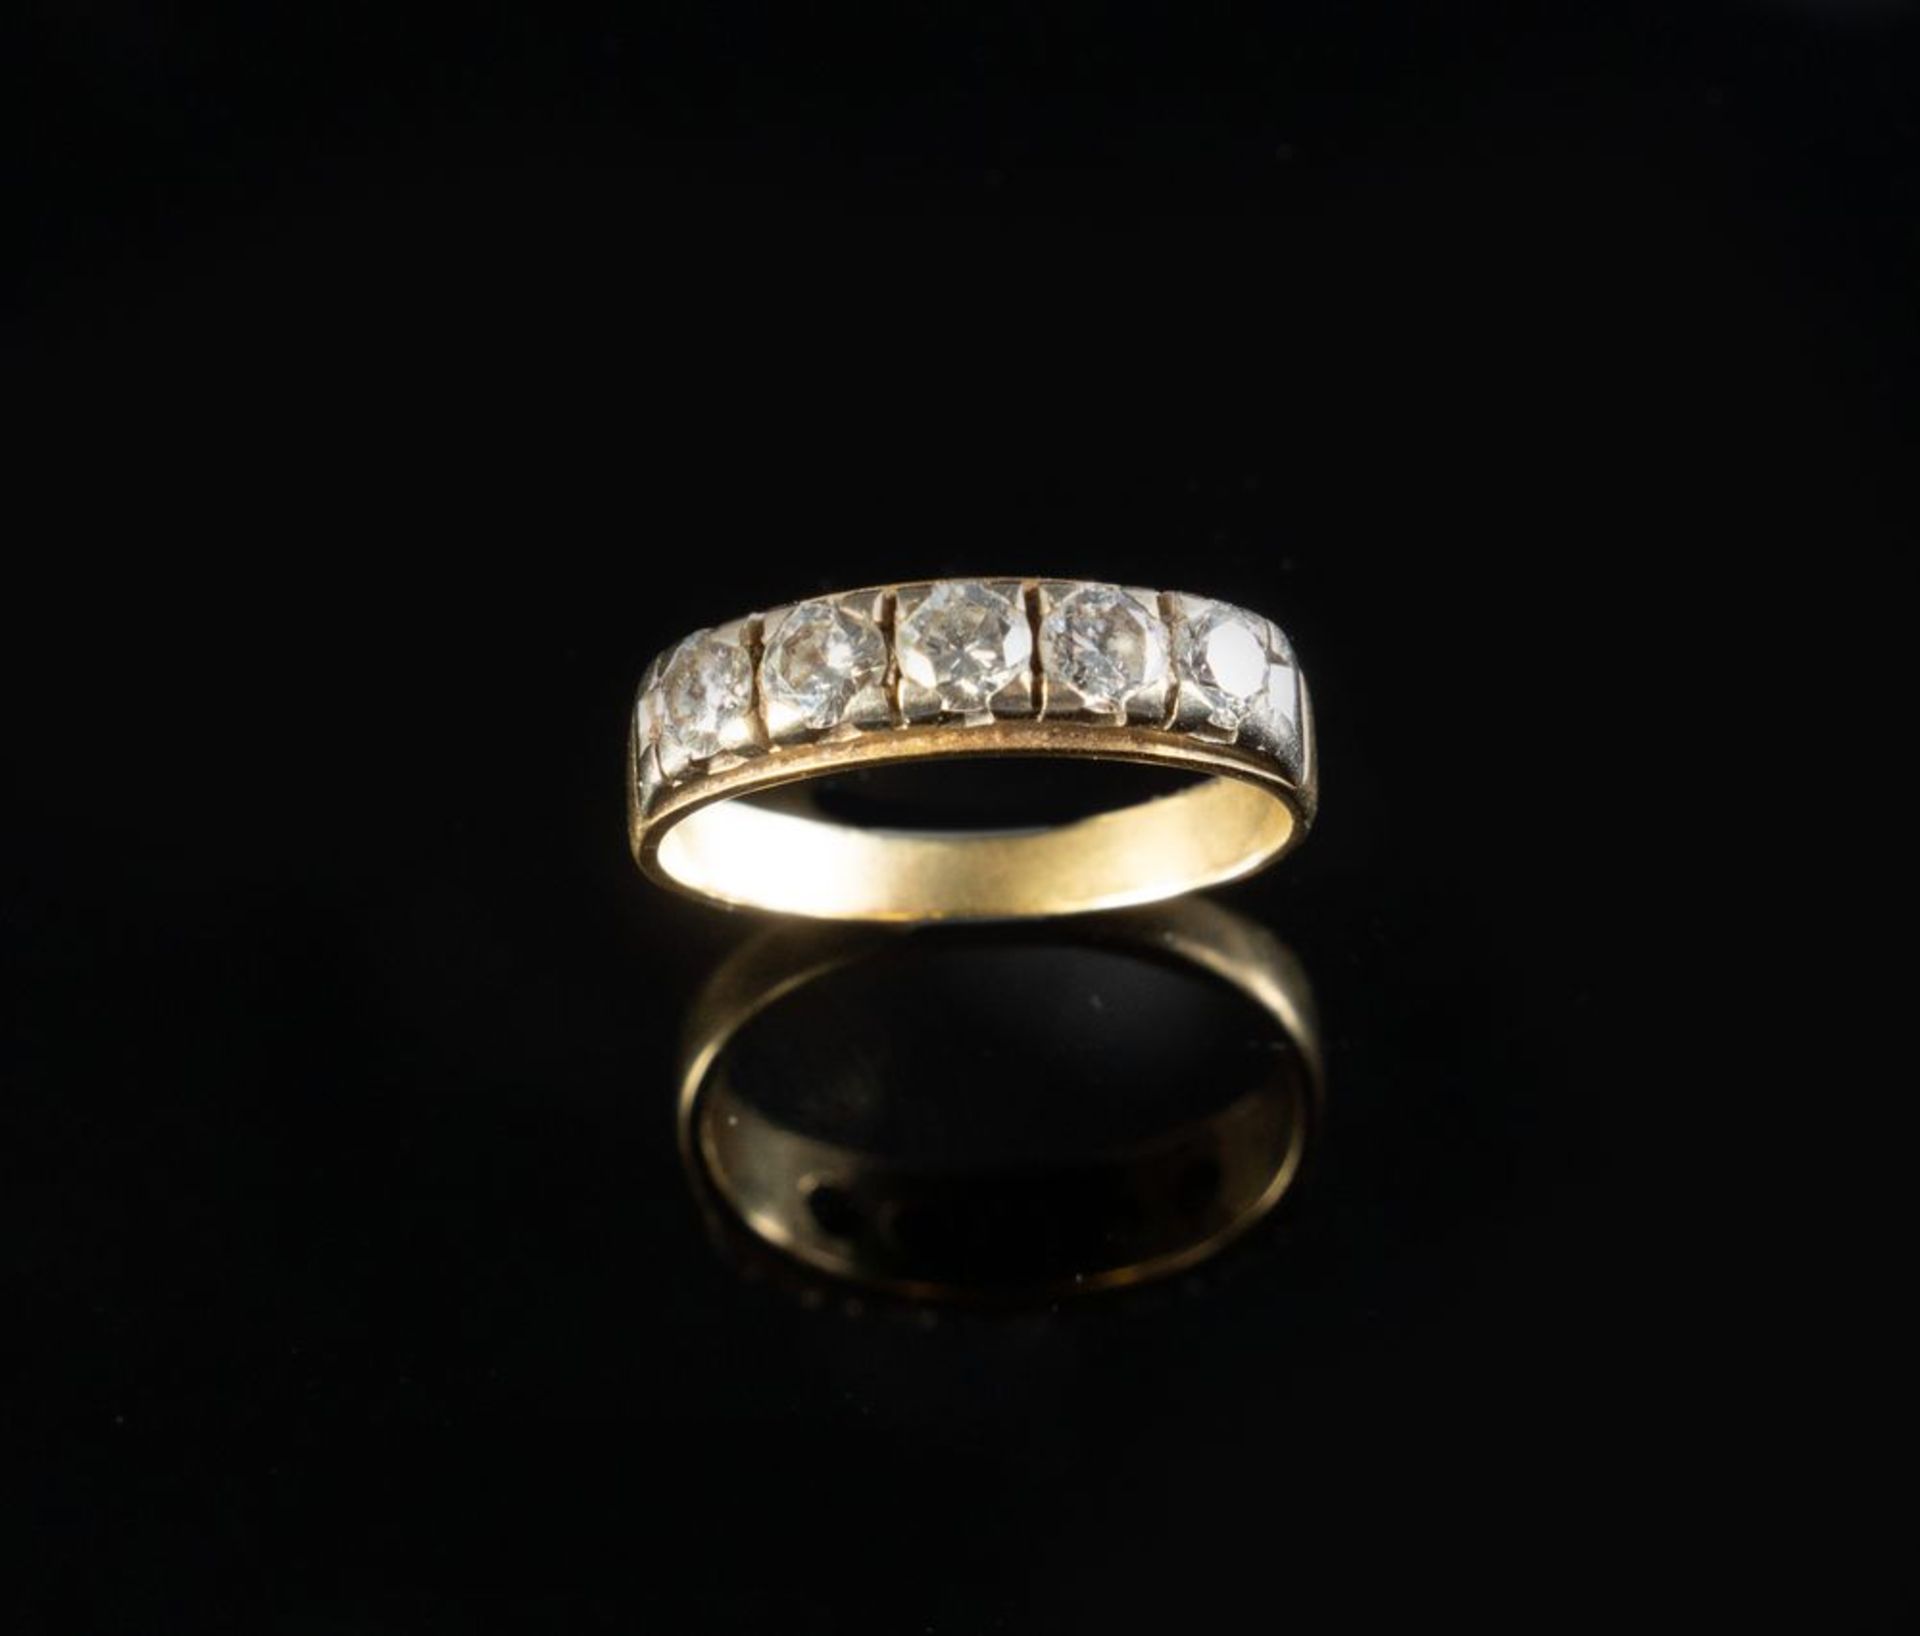 VERETTA CON 5 DIAMANTI IN ORO GIALLO
Veretta in oro giallo 18k con 5 diamanti taglio brillante roton